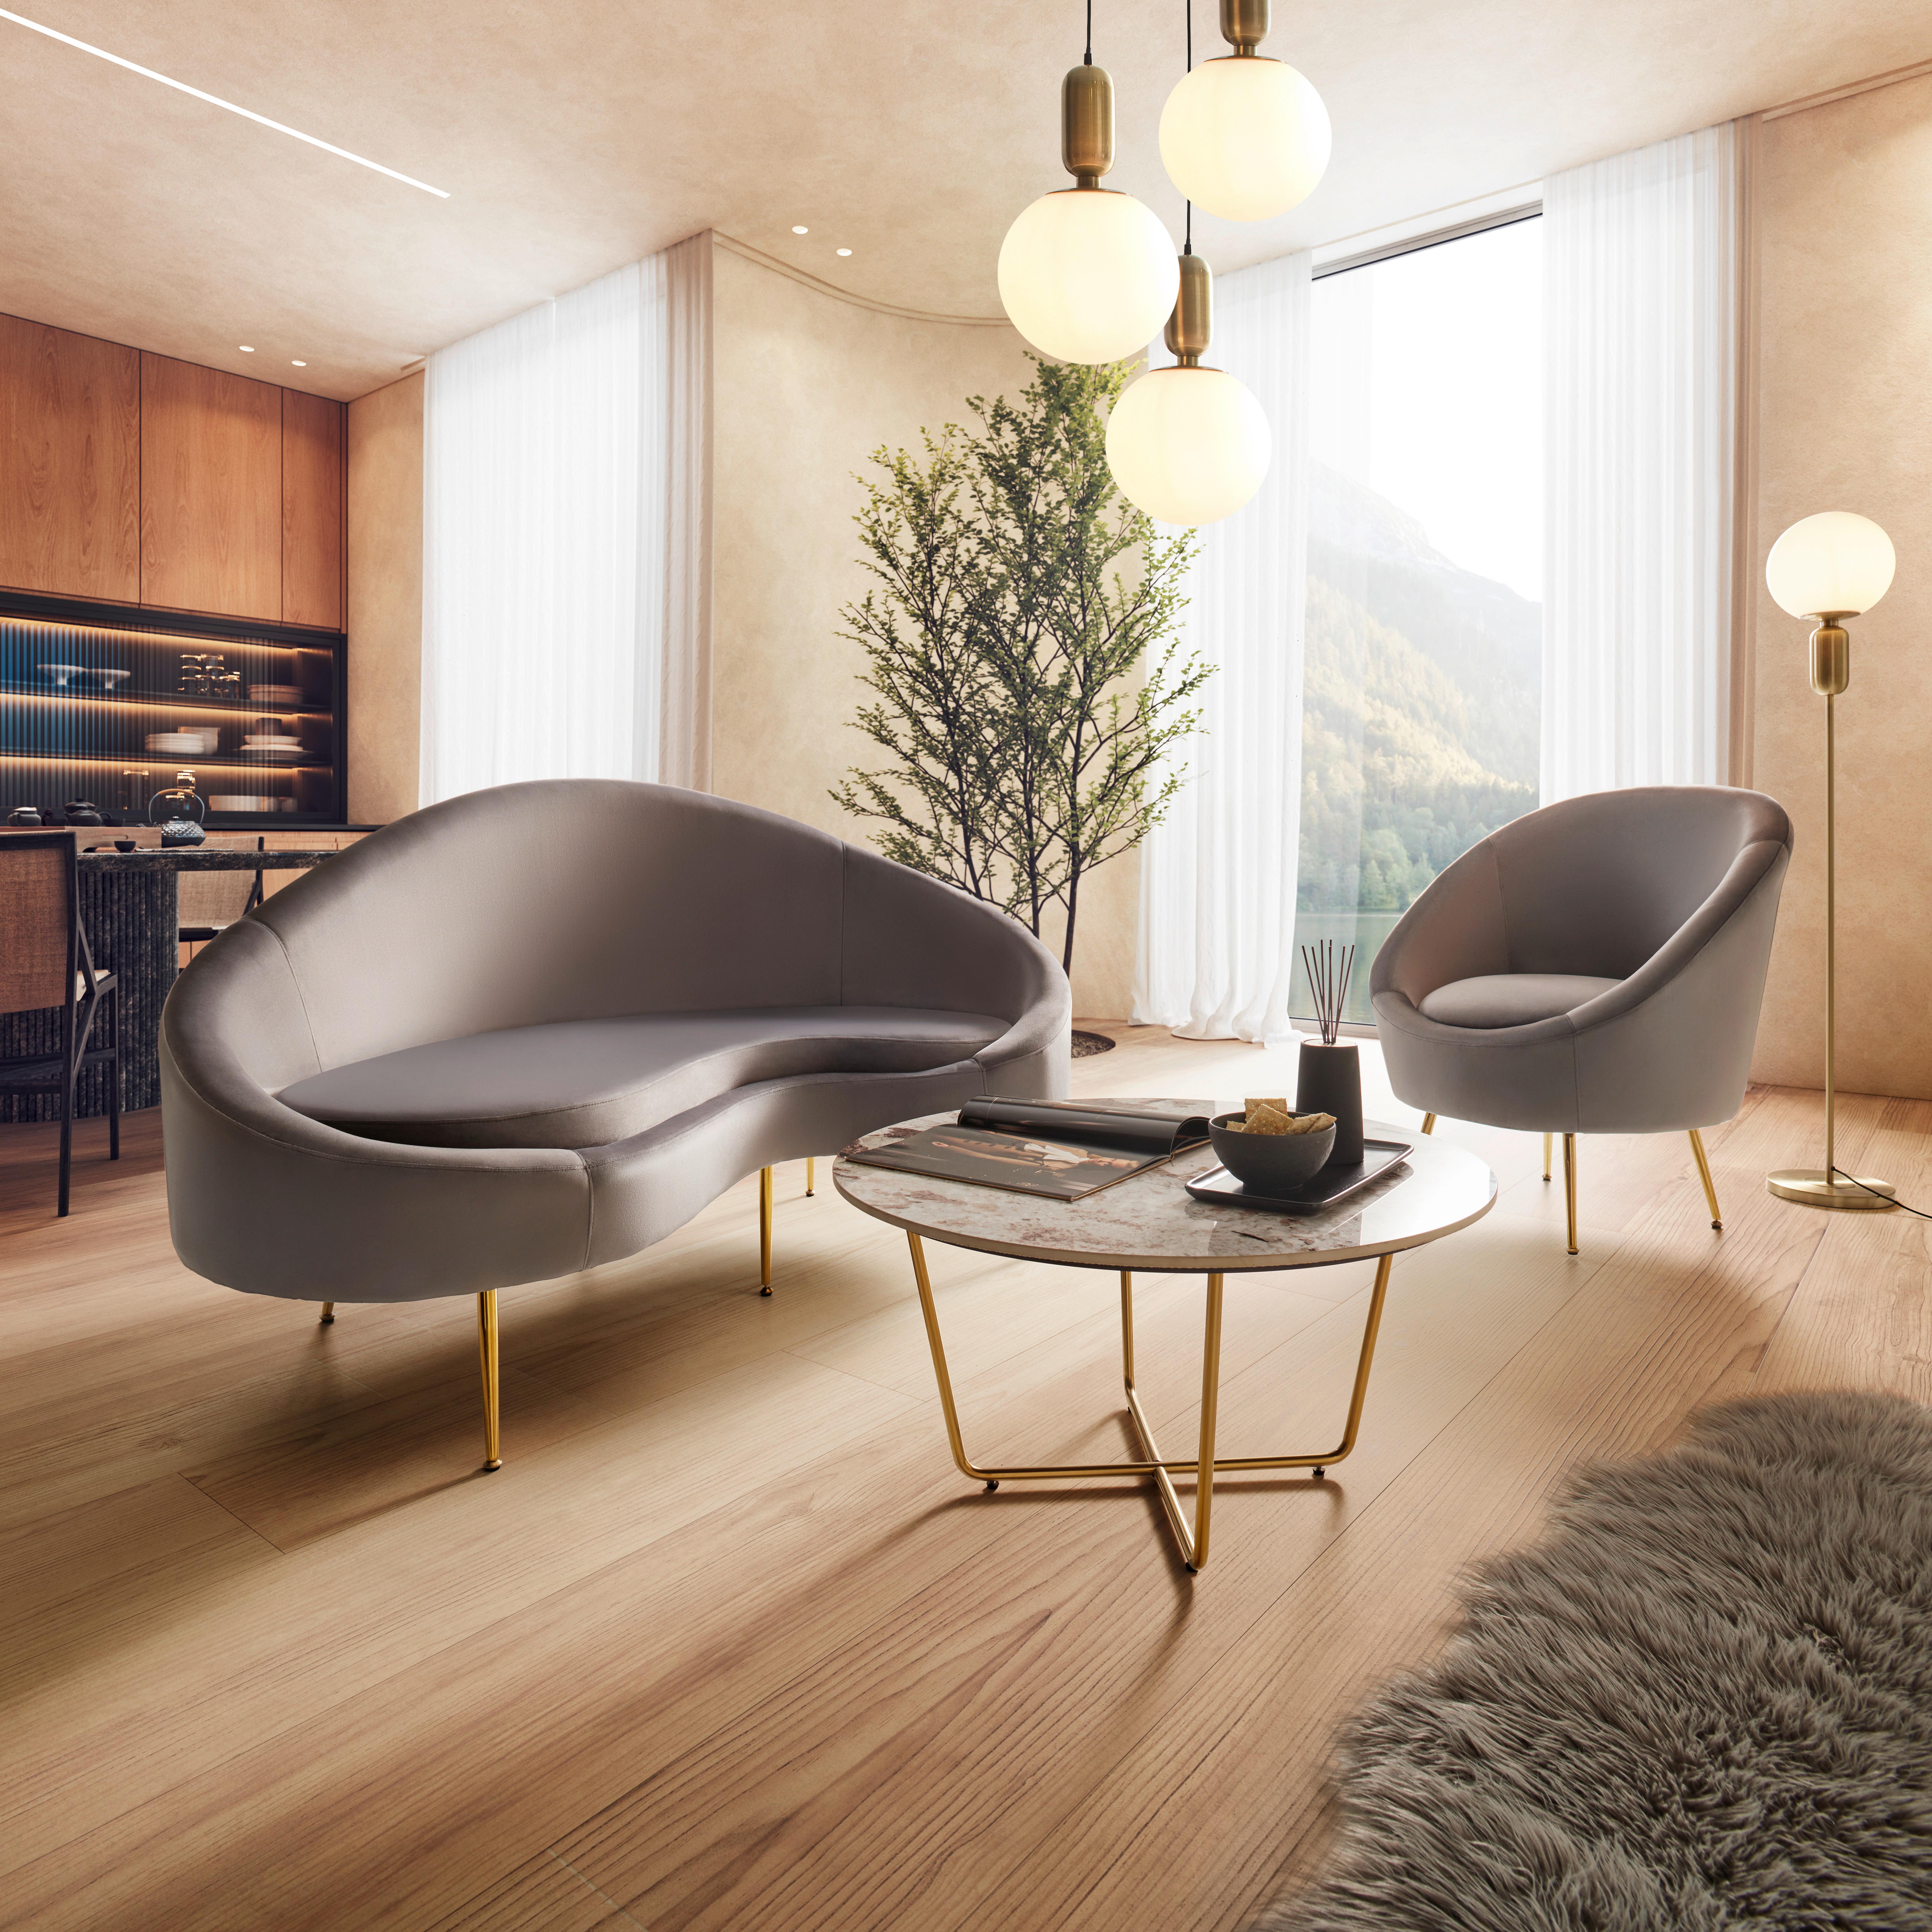 Sofa grau, "Lou", Samt - Goldfarben/Grau, MODERN, Textil/Metall (172/93/89cm) - Bessagi Home